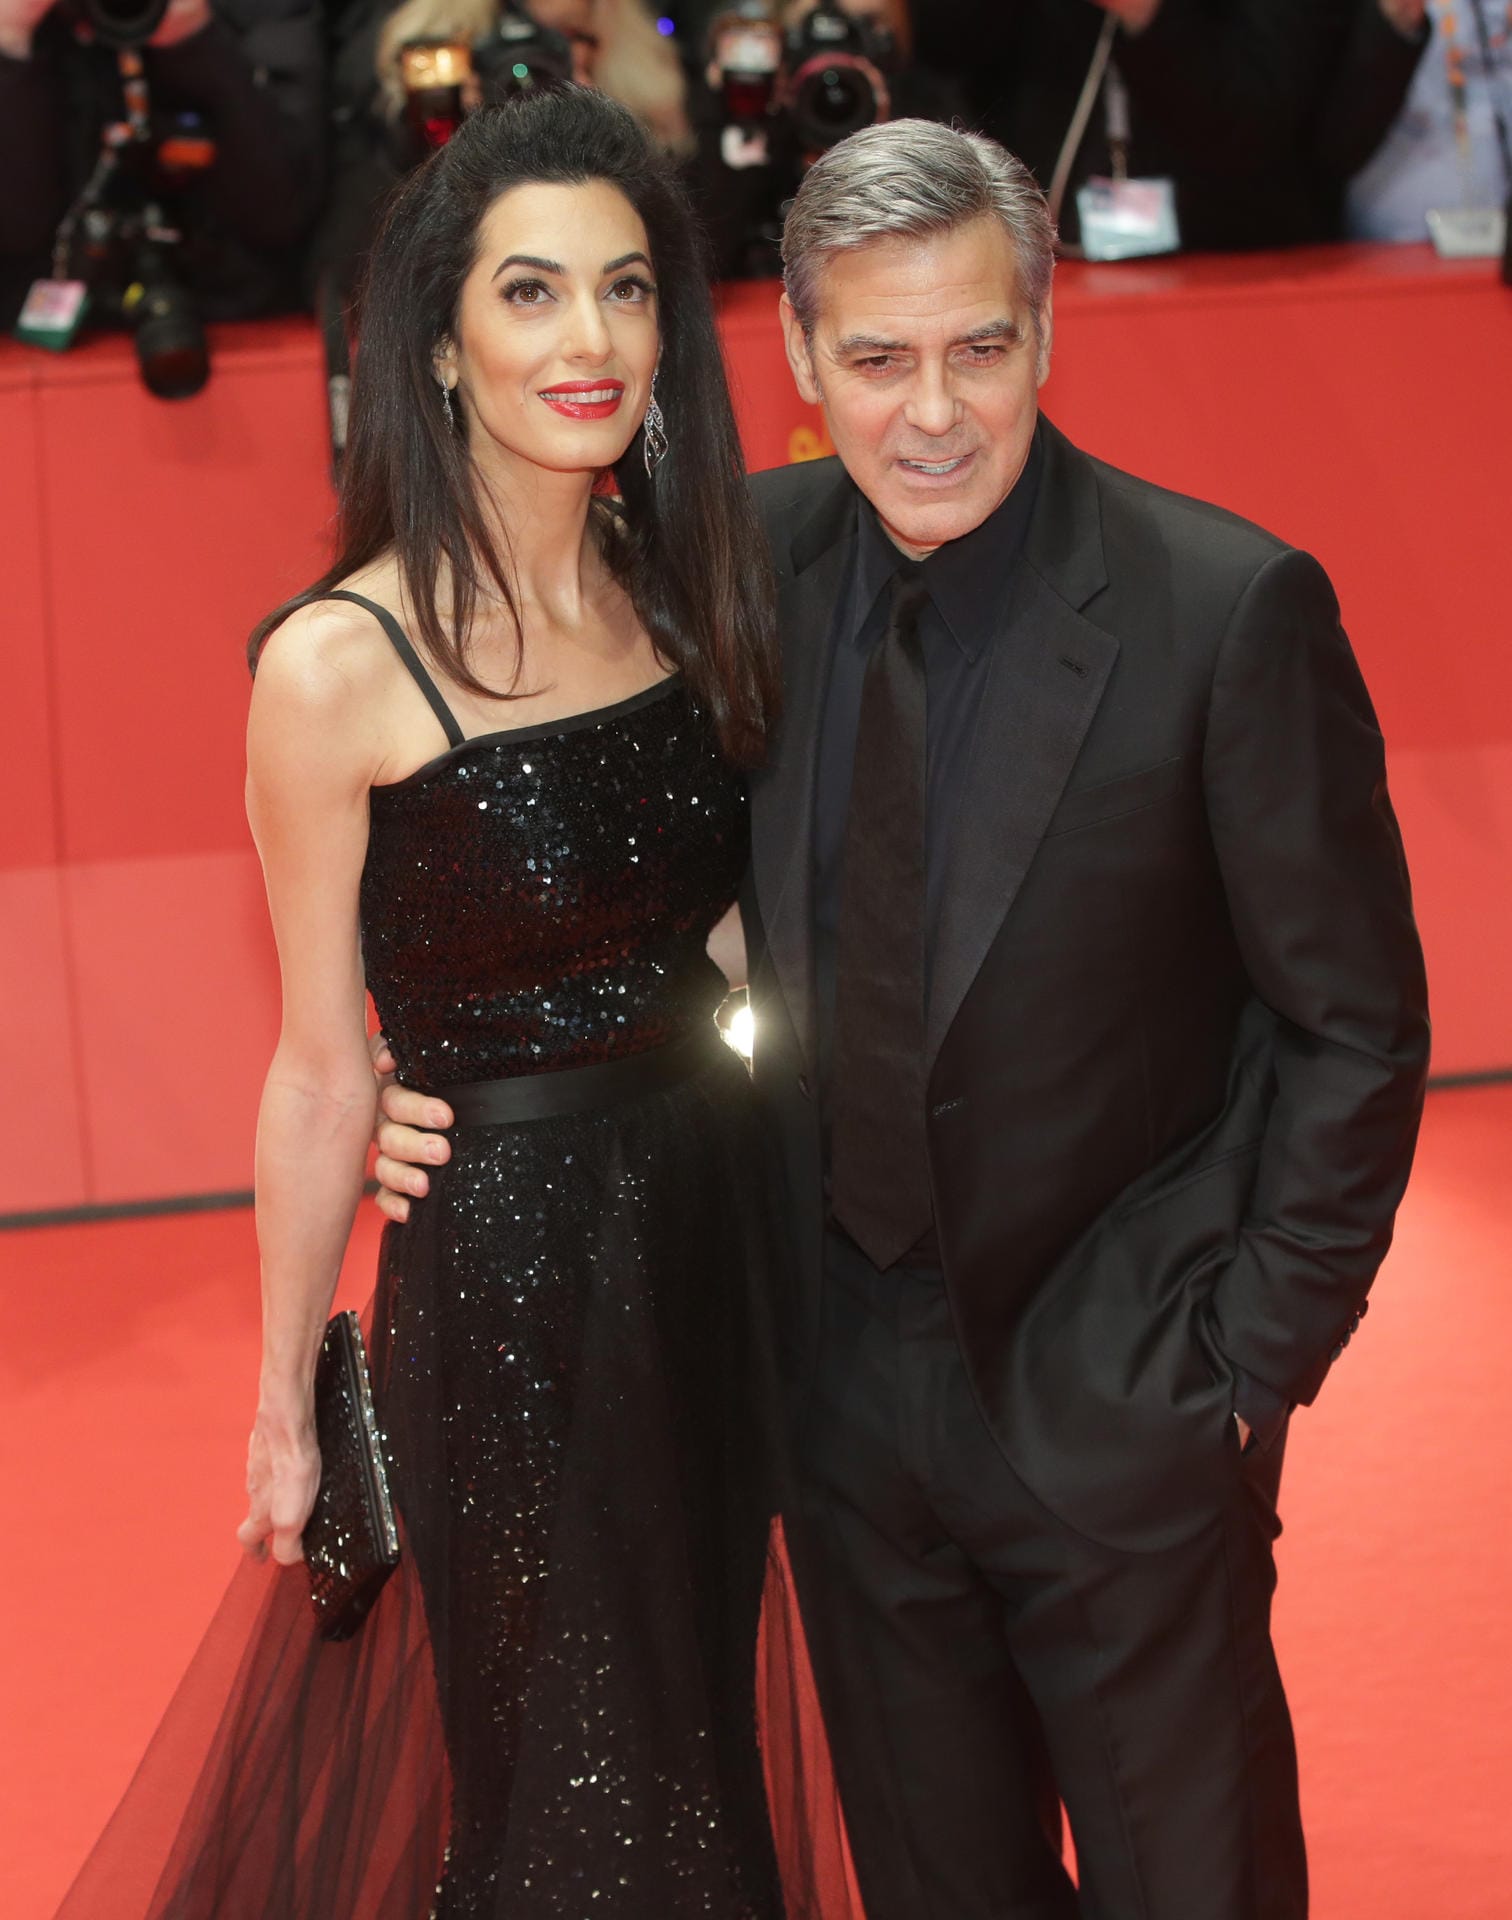 George Clooney ist der Star der Hollywood-Satire "Hail, Caesar!", die auf der 66. Berlinale als Eröffnungsfilm Premiere feierte. Clooney kam gemeinsam mit seiner Frau Amal.